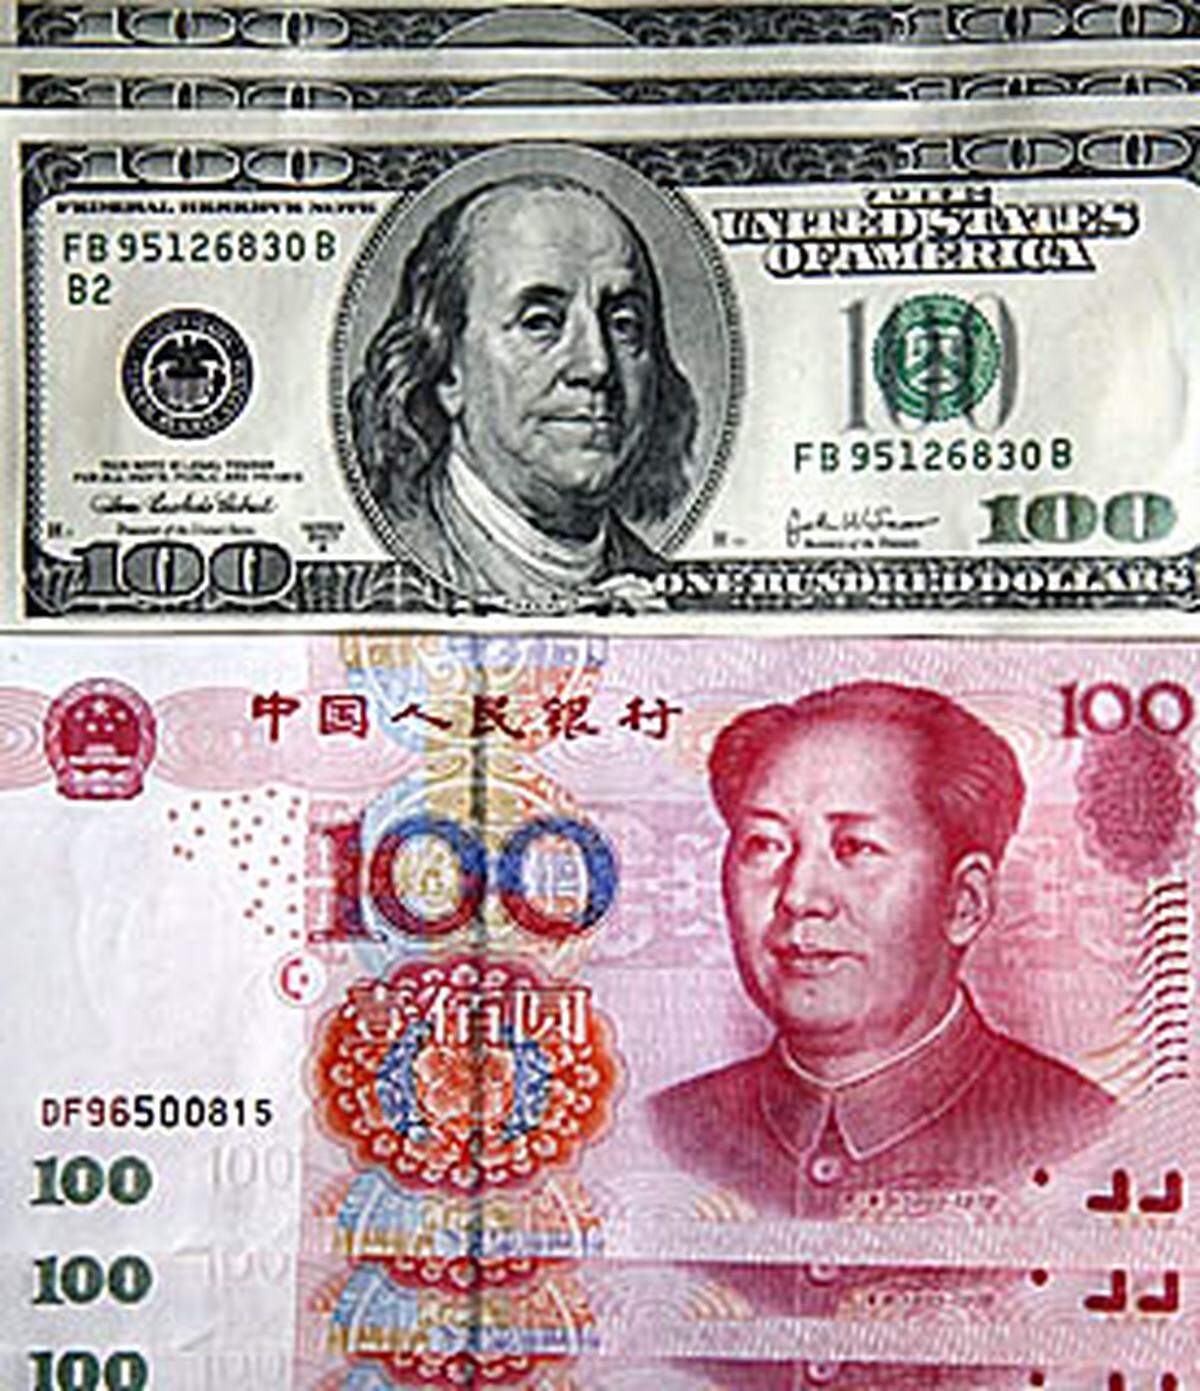 Obwohl der Euro dem Dollar mittlerweile immer dichter auf den Fersen ist, setzen Staaten und Zentralbanken noch immer hauptsächlich auf den Dollar als Reservewährung. Sein Anteil in den Tresoren rund um den Globus ist zwar in den vergangenen Jahren gesunken, liegt aber immer noch bei etwa 60 Prozent. Analysten erwarten jedoch, dass der Dollar in den kommenden Jahren weiter an Boden verliert - gegen den Euro. Wegen des rasanten Aufstiegs Chinas wird auch dessen Währung, der Yuan, immer wichtiger.